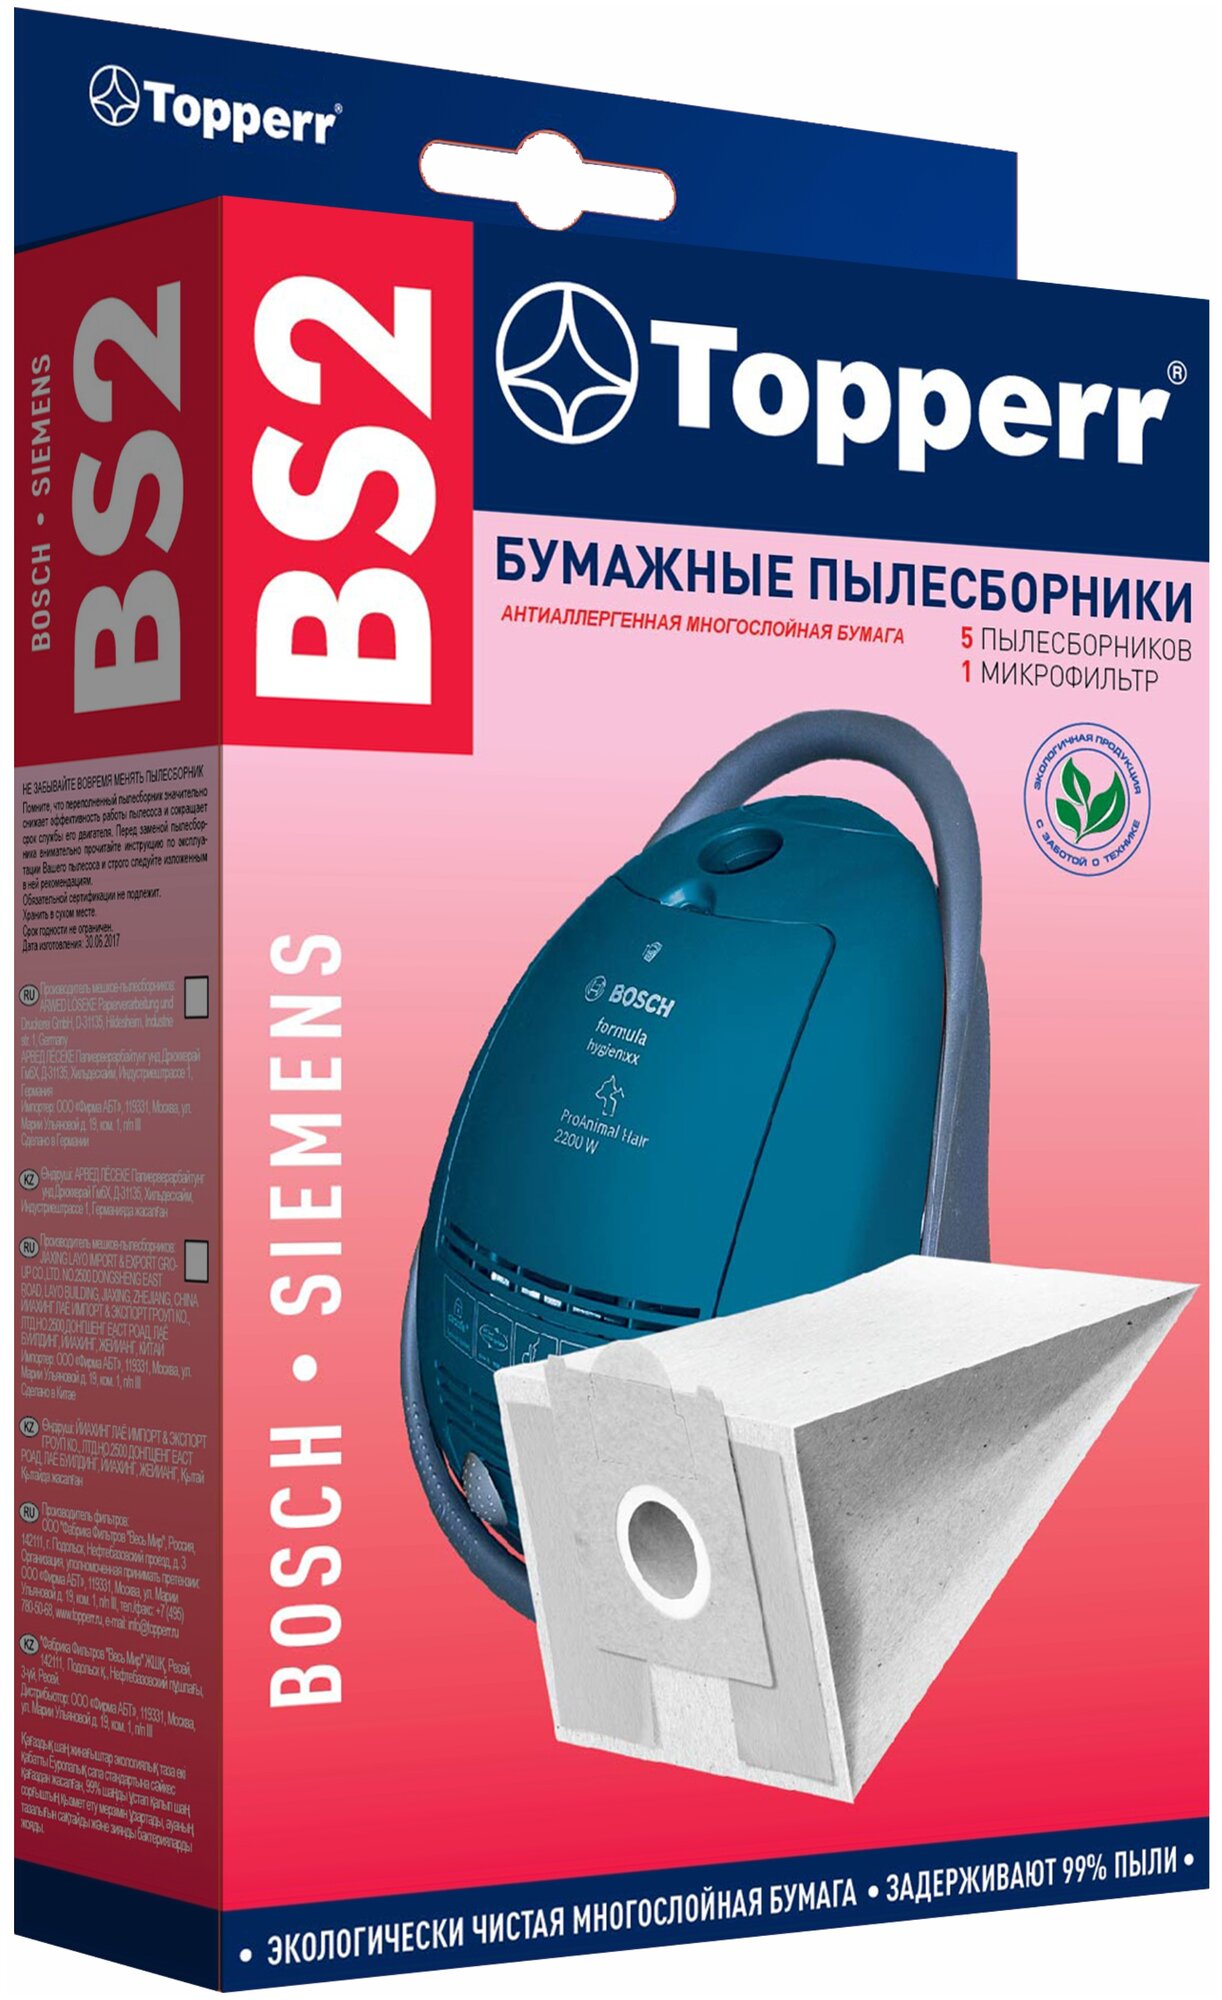 Пылесборники бумажные Topperr BS 2 5шт + 1 микрофильтр